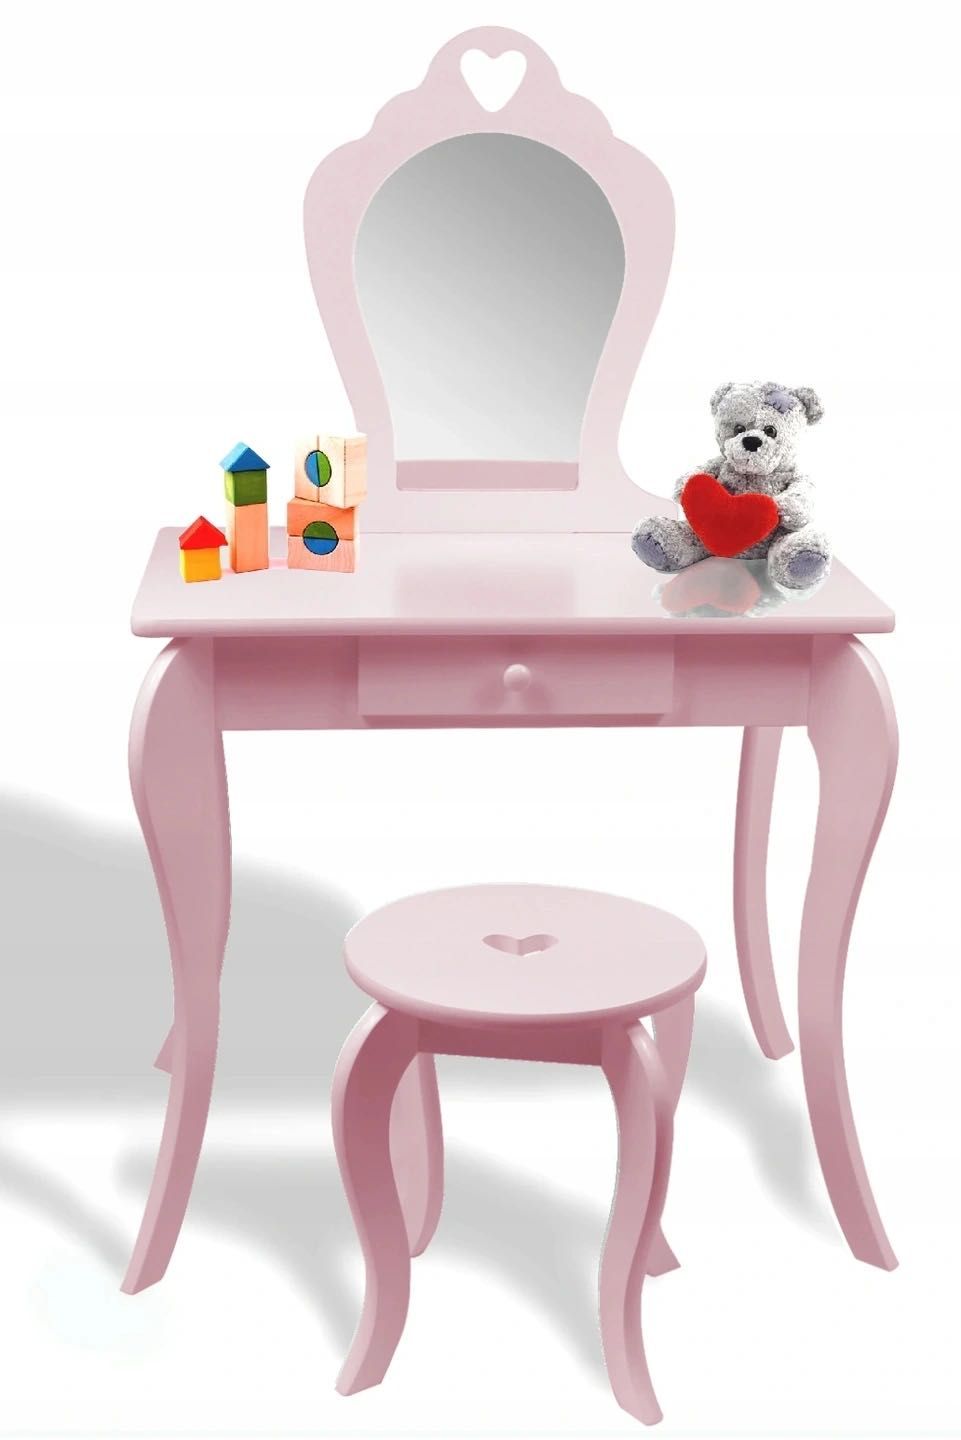 Детский туалетный столик для девочки цвет розовый. Подарок для девочки